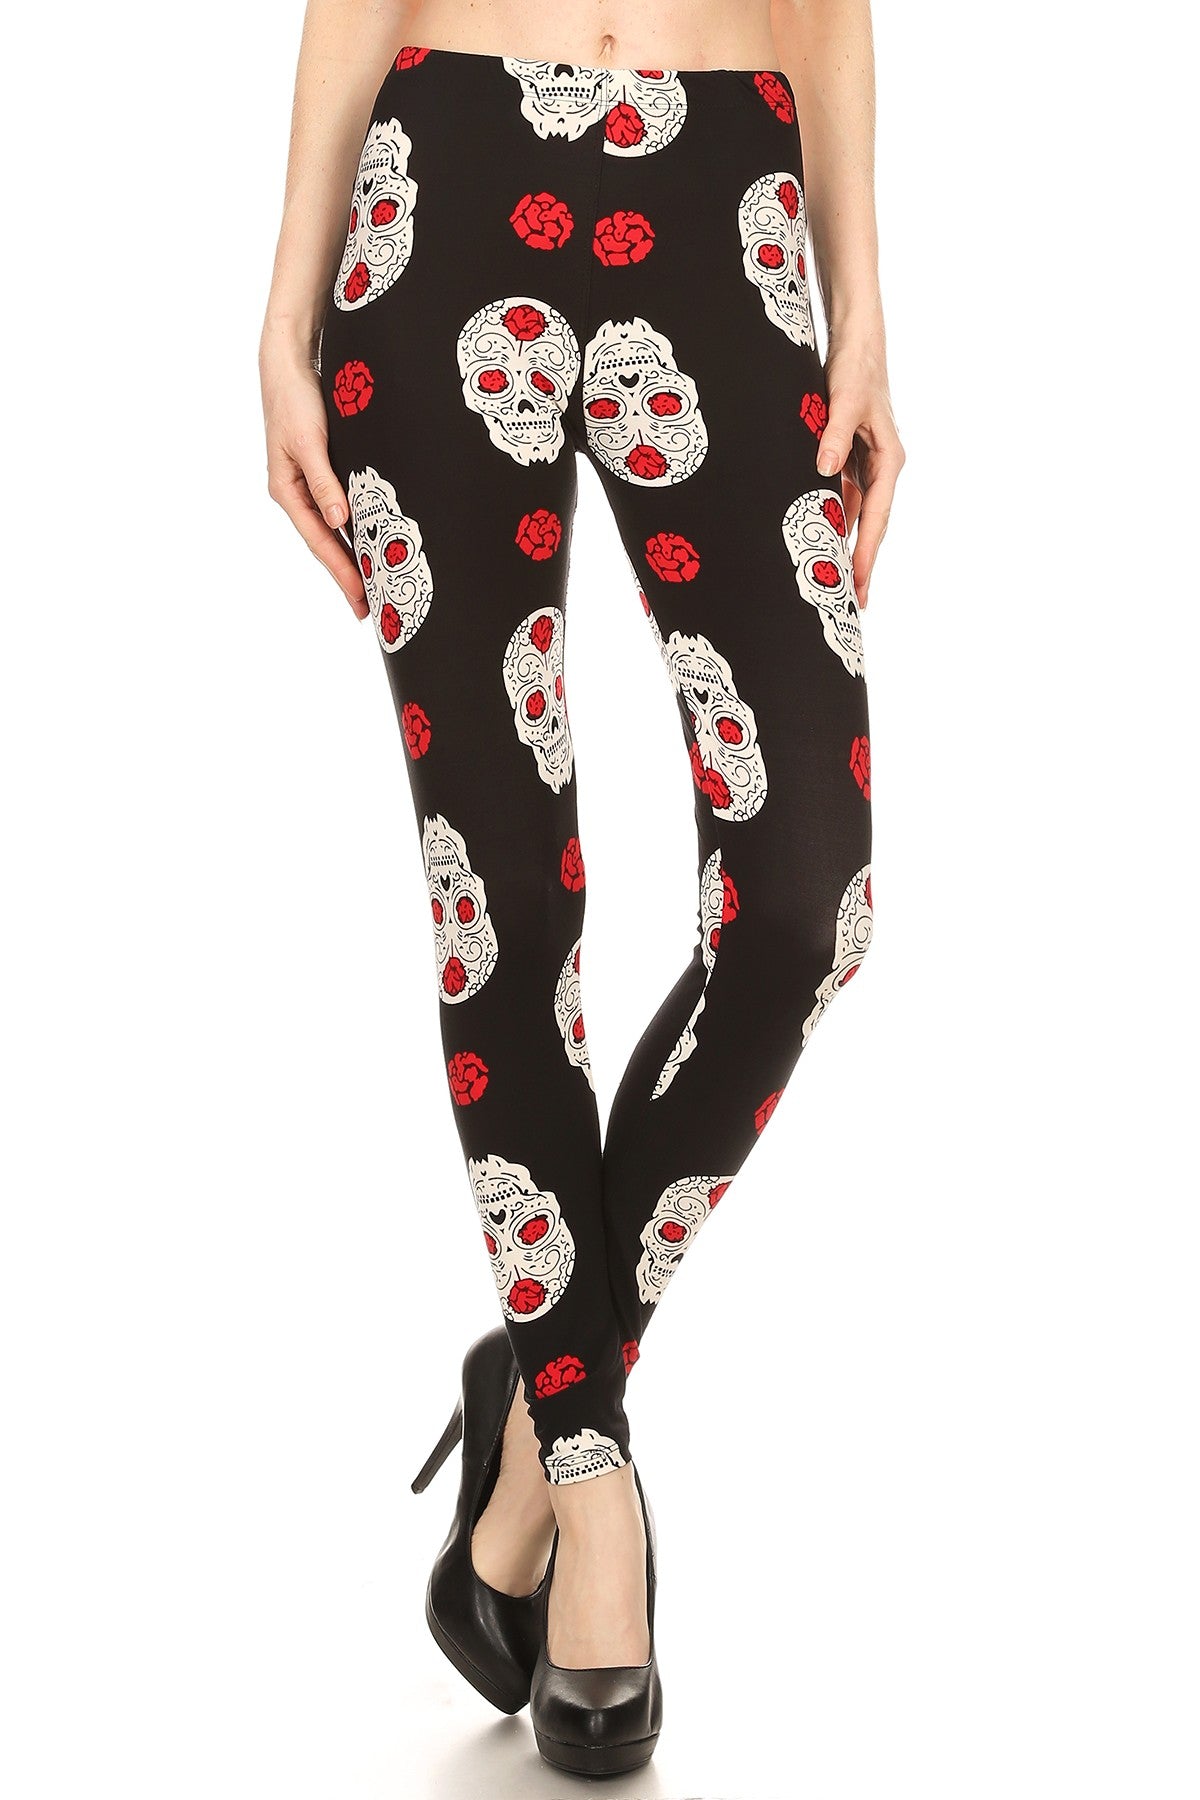 Skulls 'N Roses - Women's Plus Size 3X-5X Leggings – Apple Girl Boutique